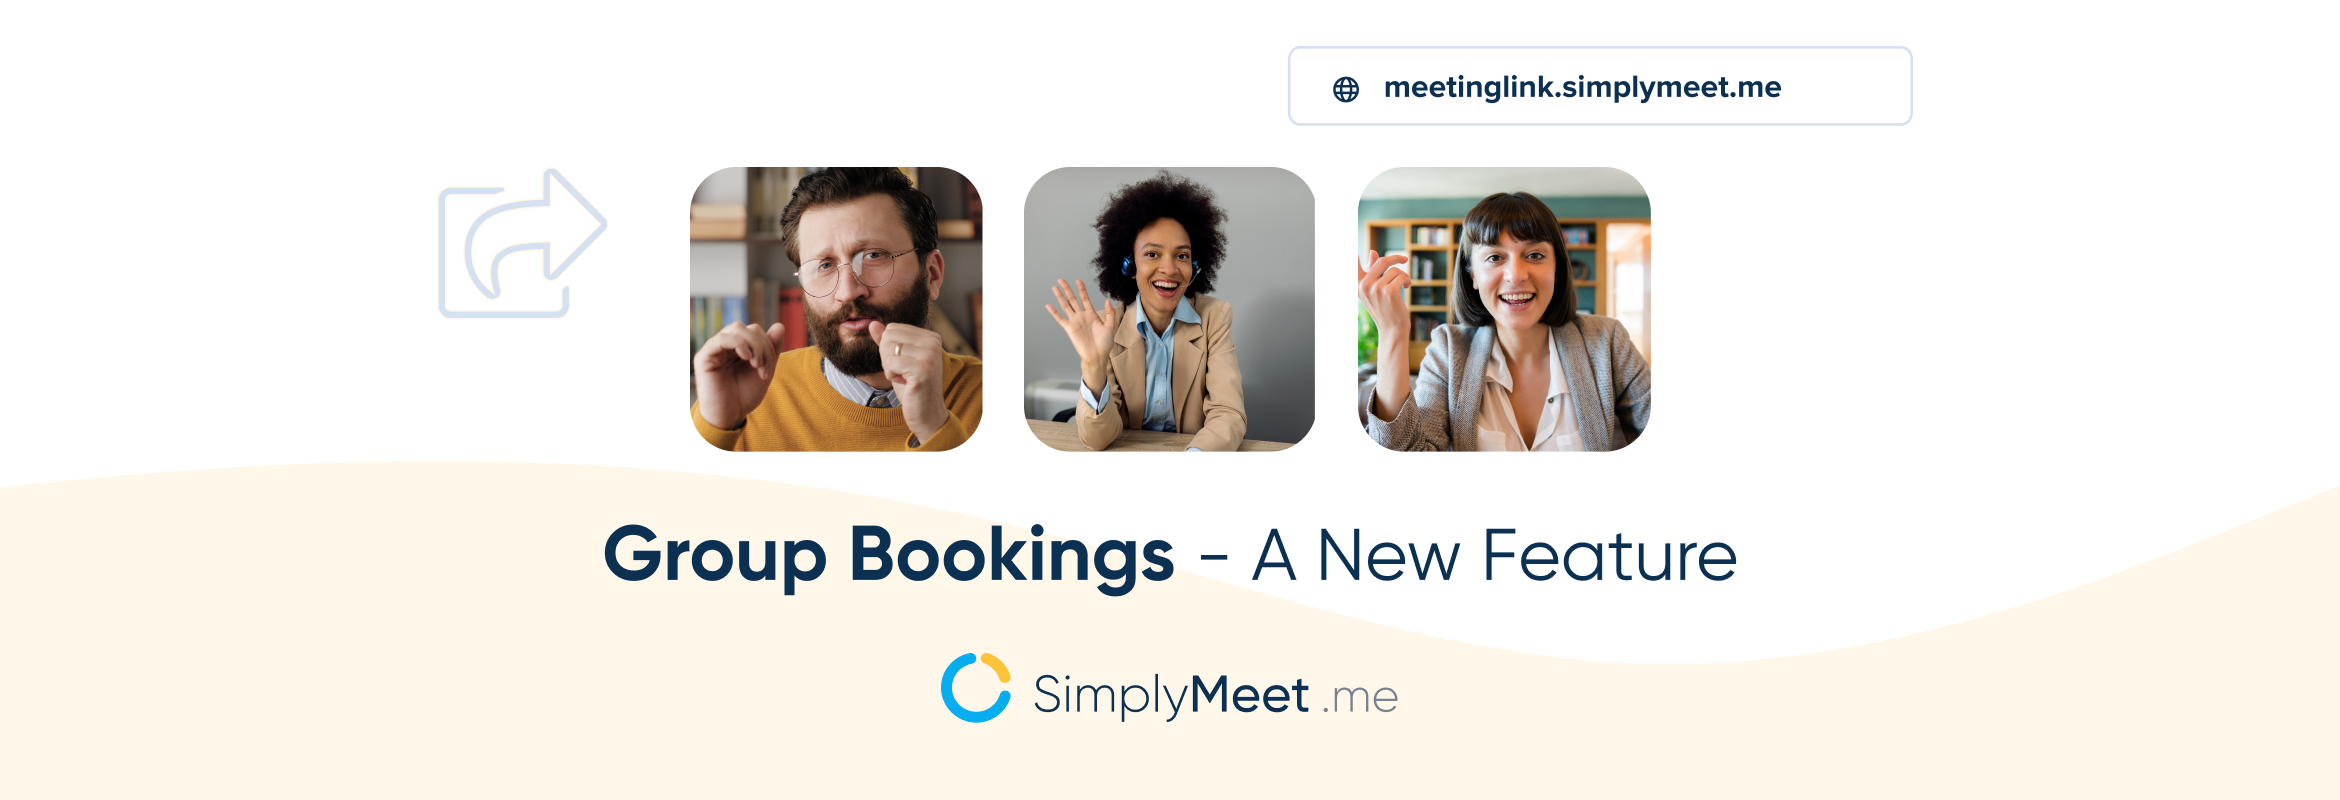 group bookings from SimplyMeet.me